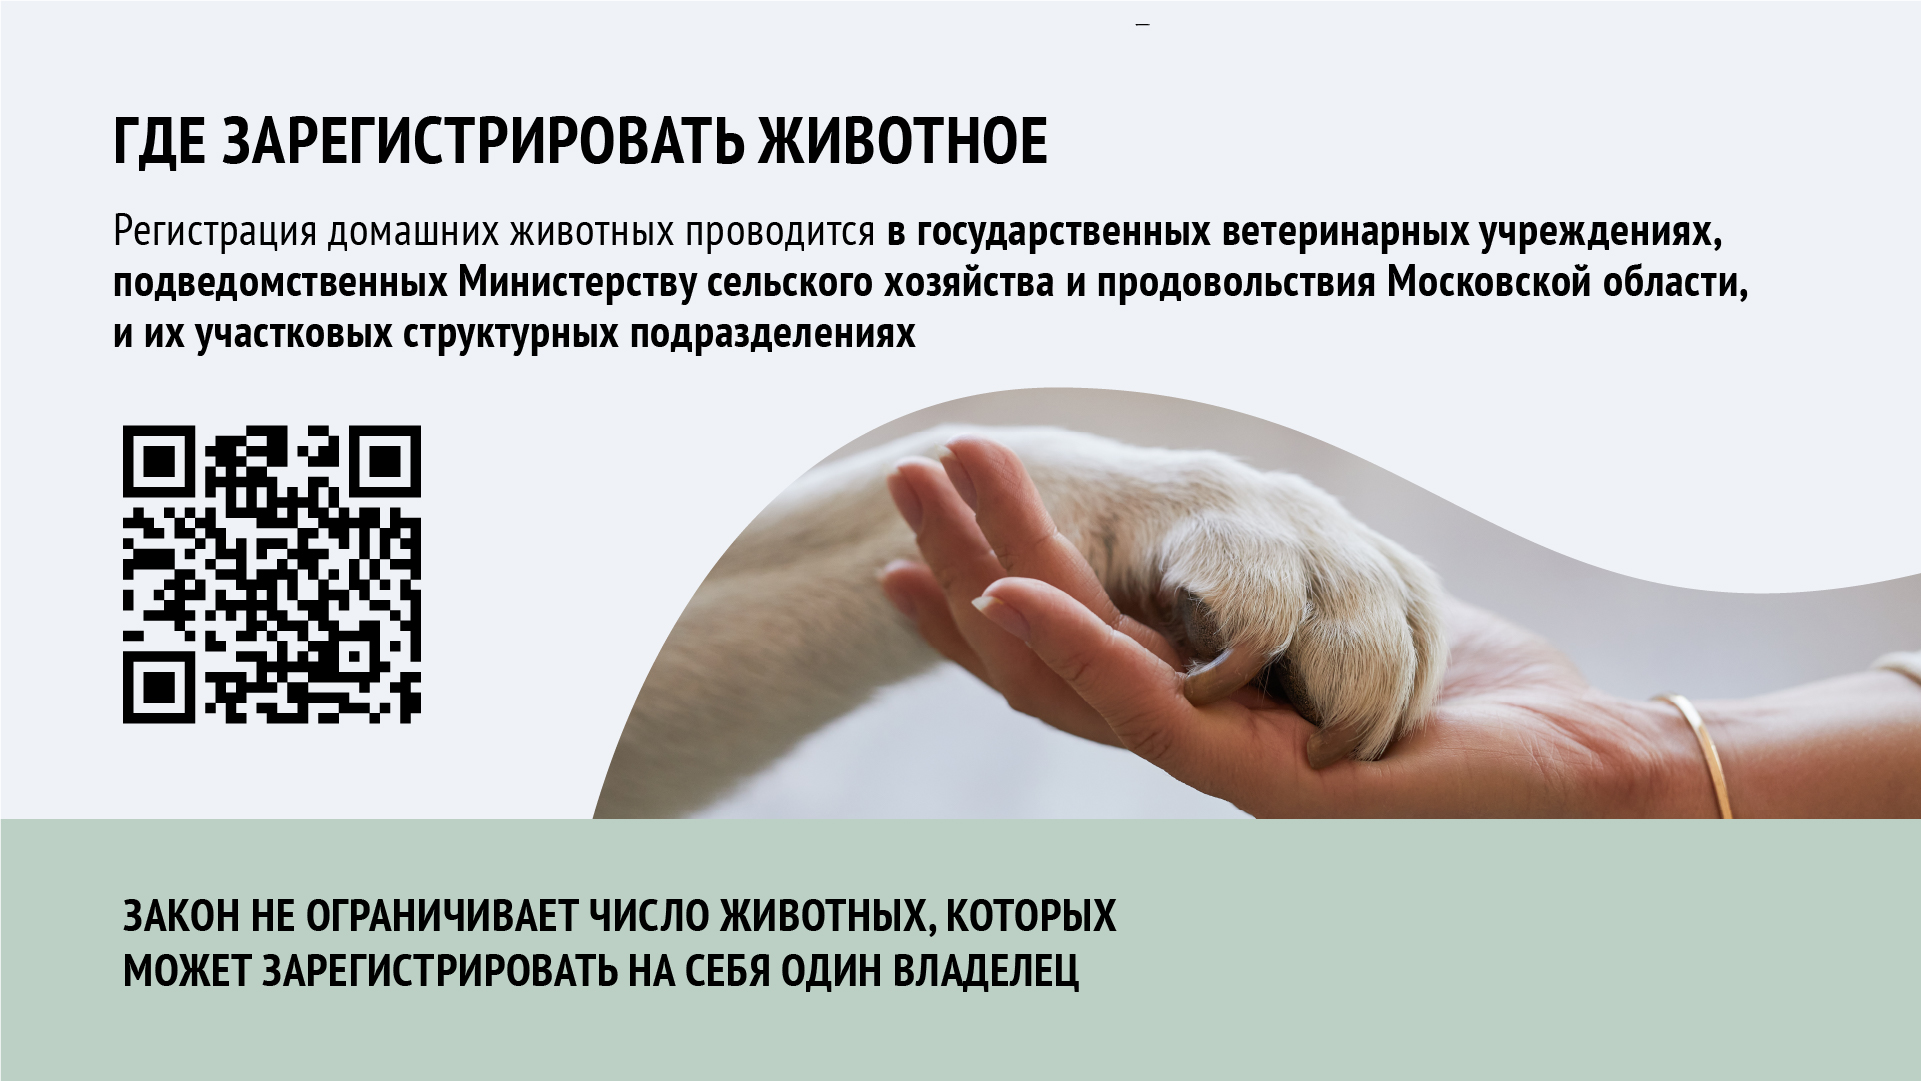 О регистрации домашних животных в Московской области